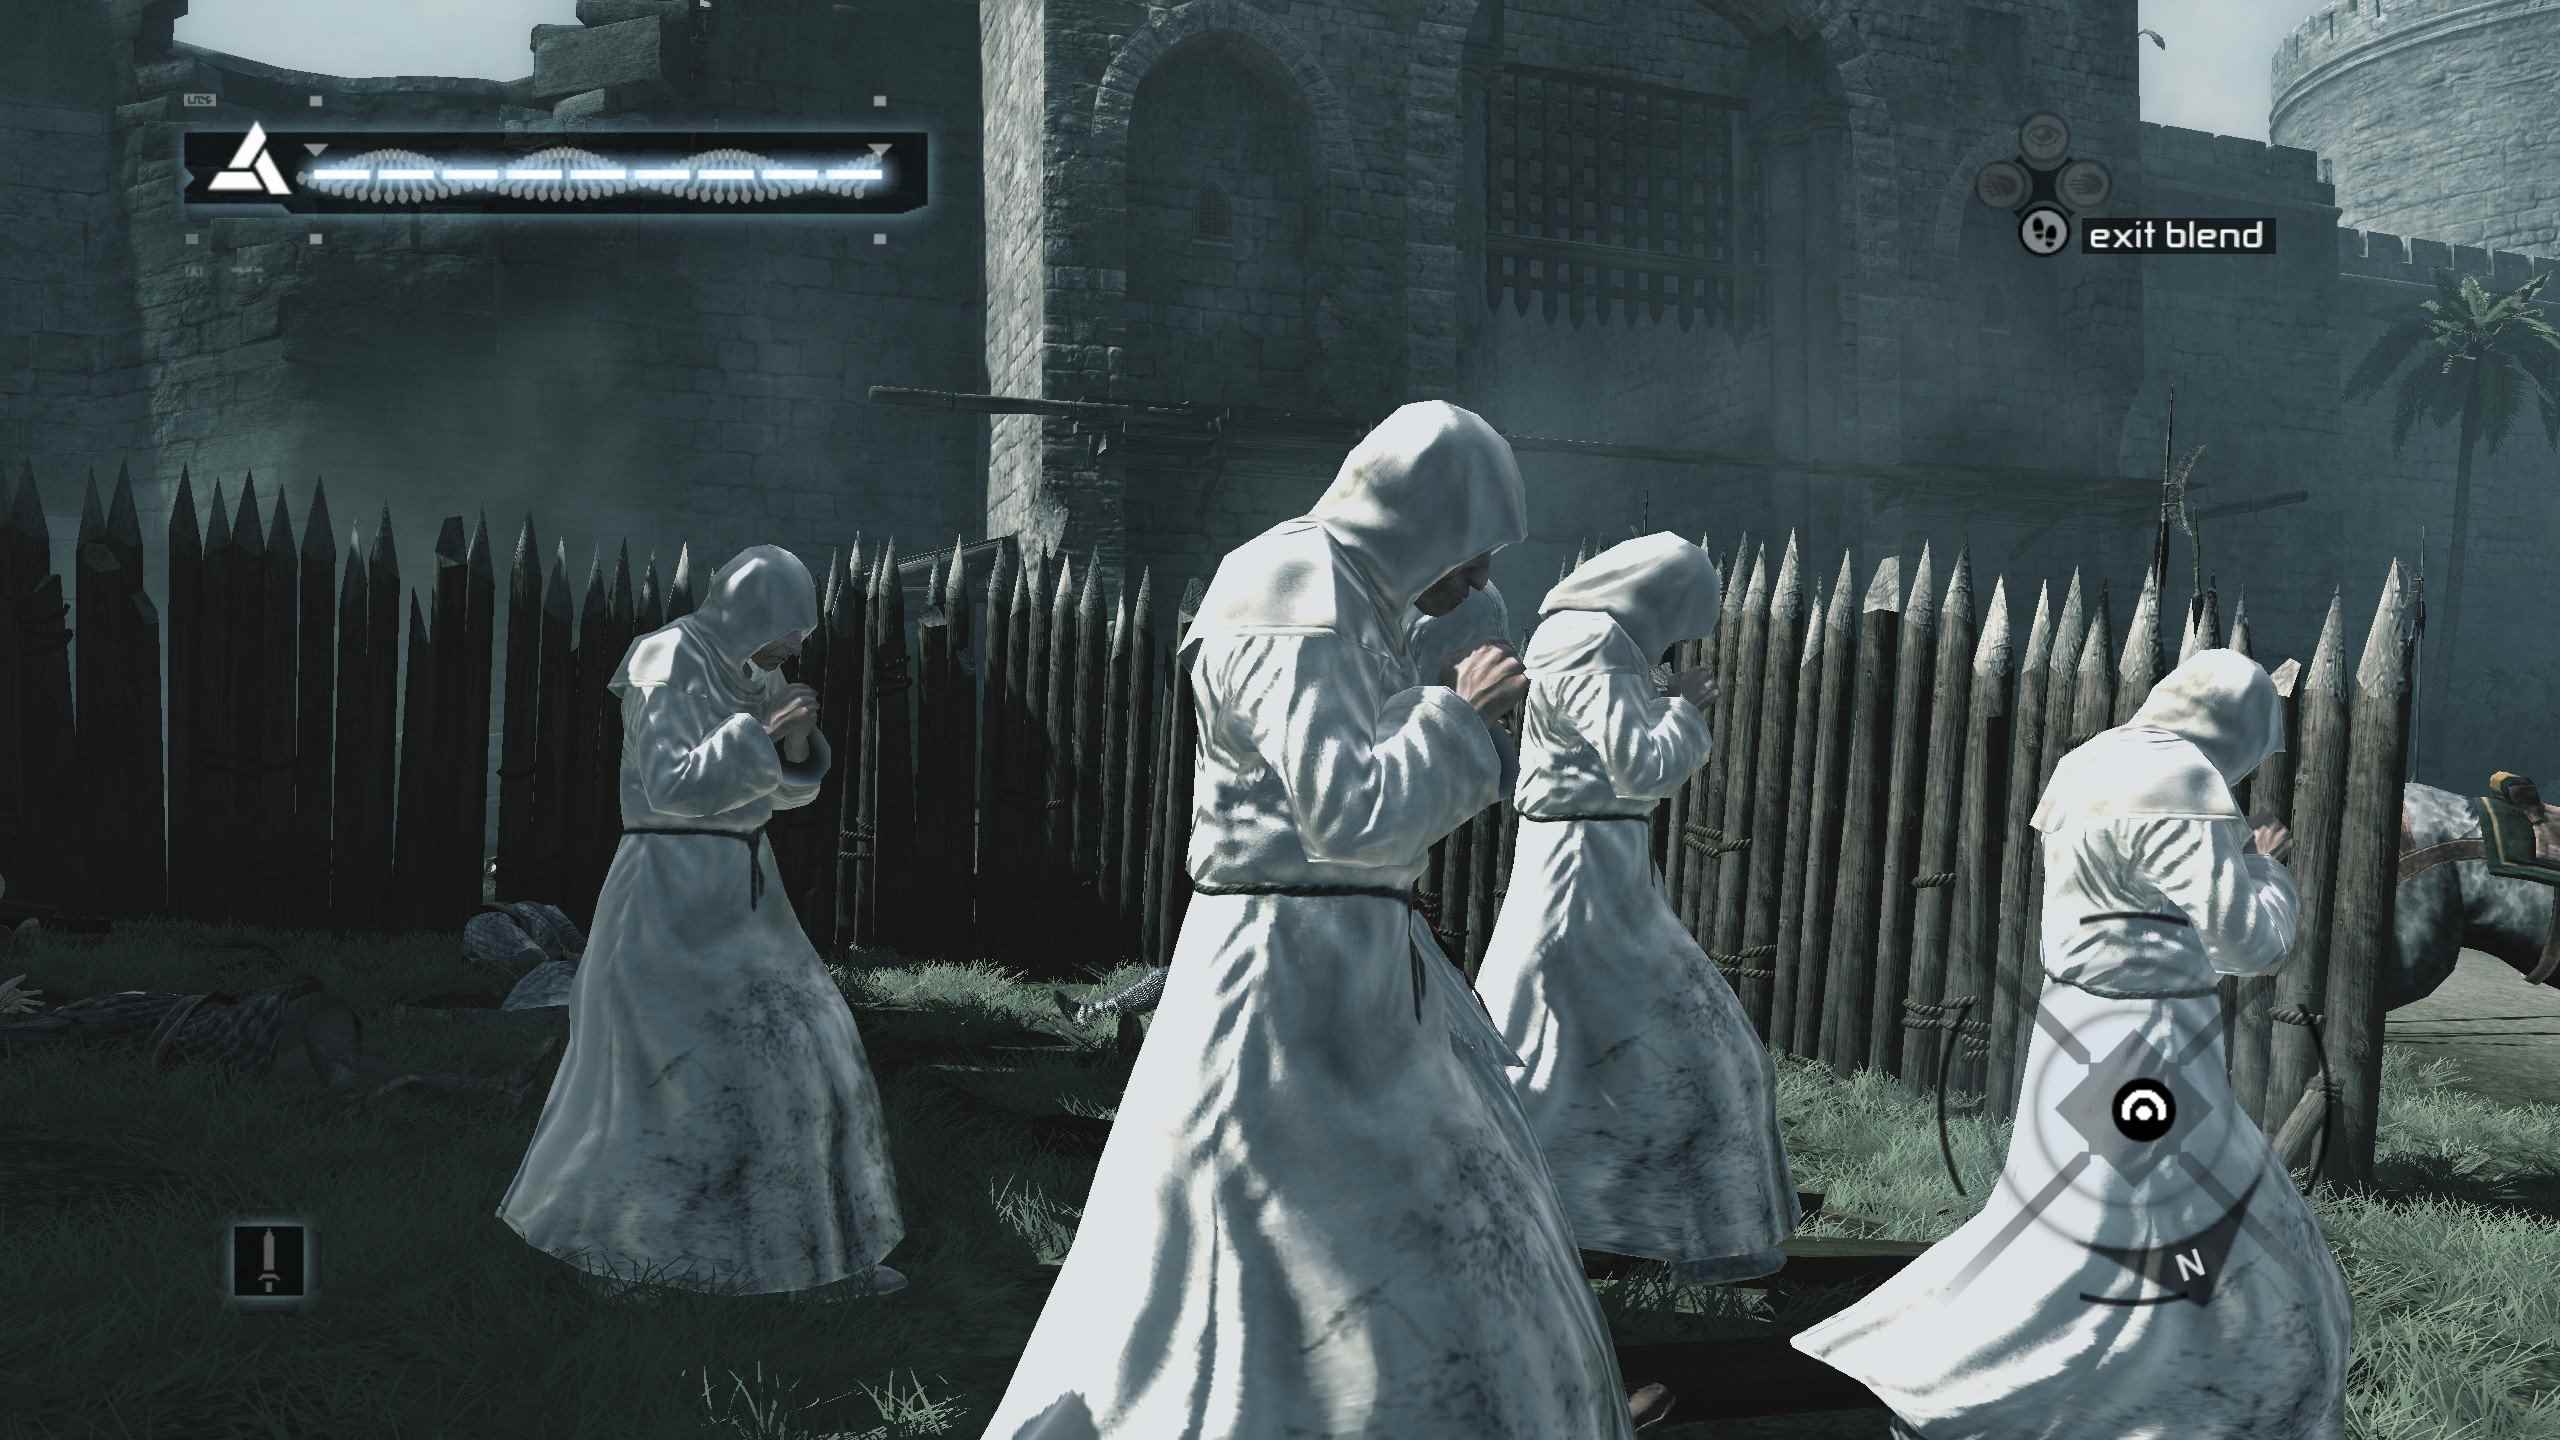 Oyuncu, orijinal Assassin's Creed'deki rahipler arasında harmanlanır.